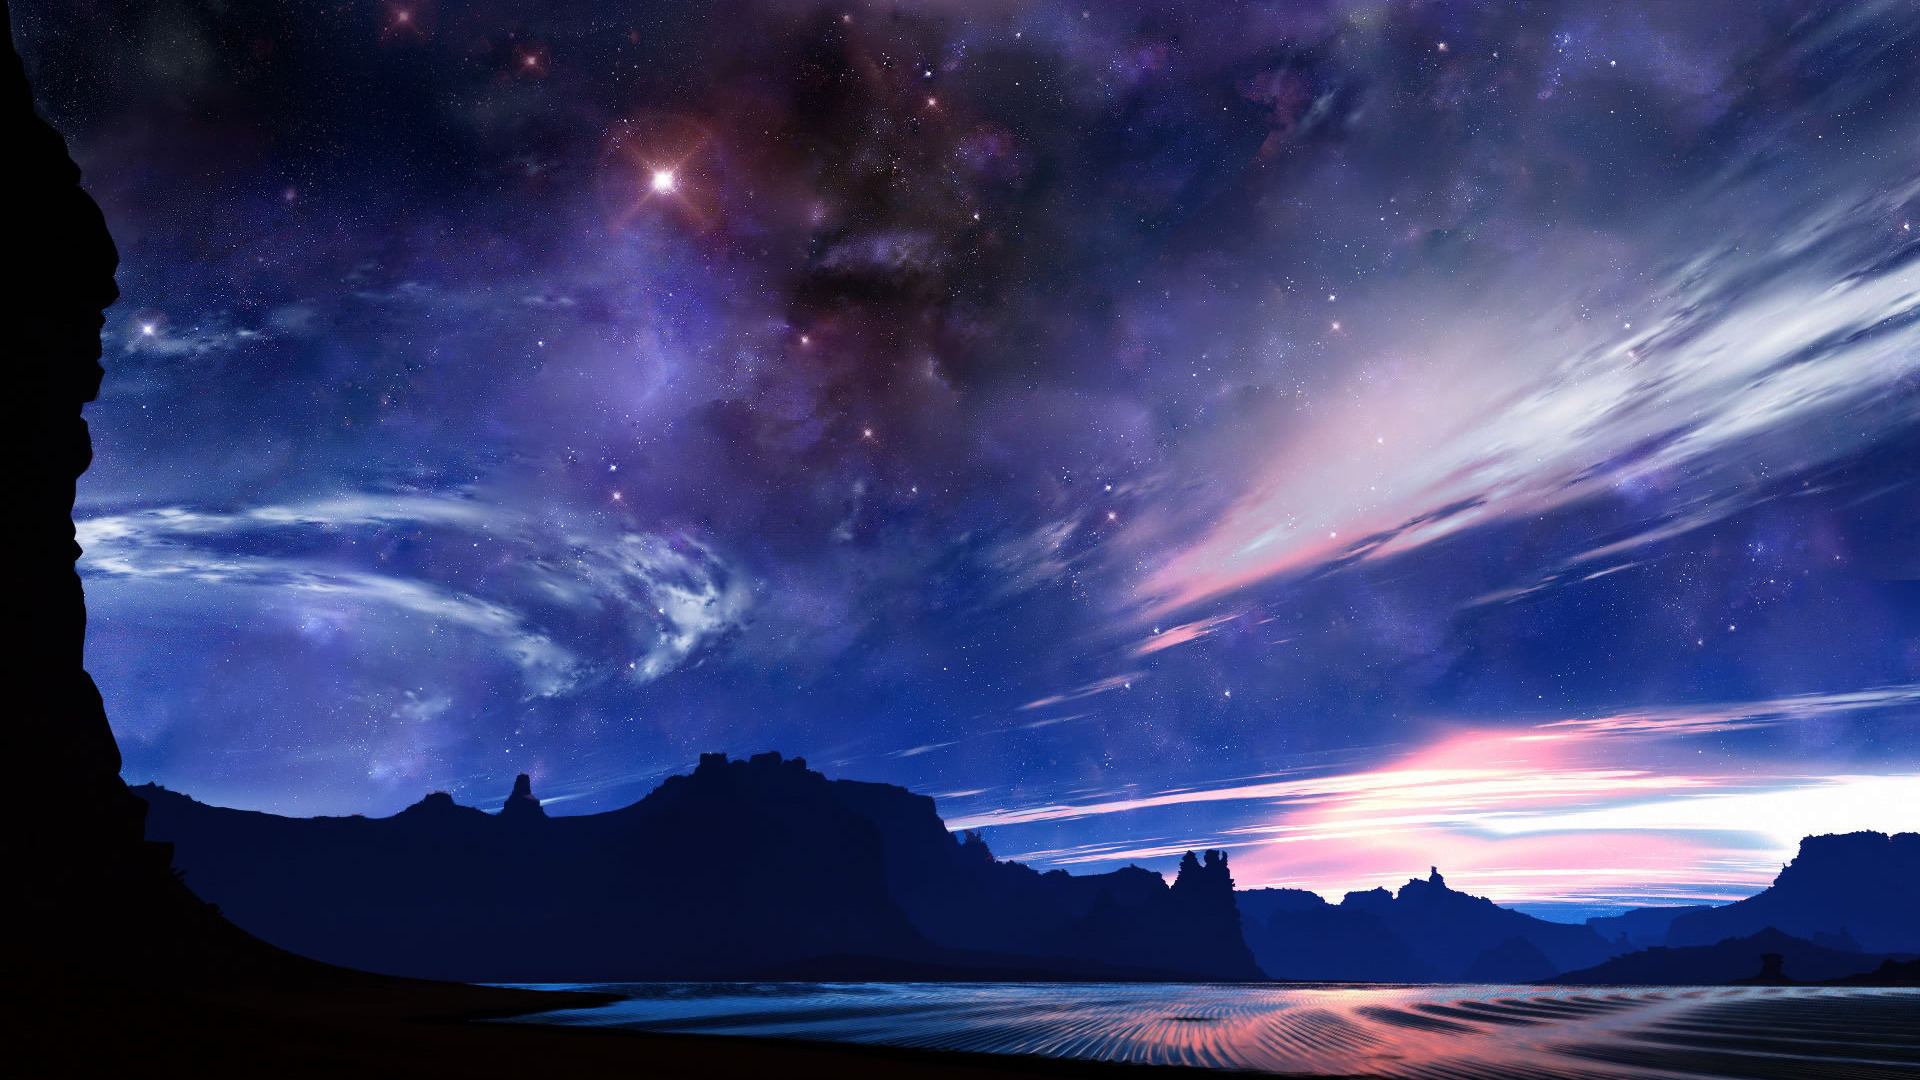 ð¥ [48+] Night Sky Background Wallpaper | WallpaperSafari